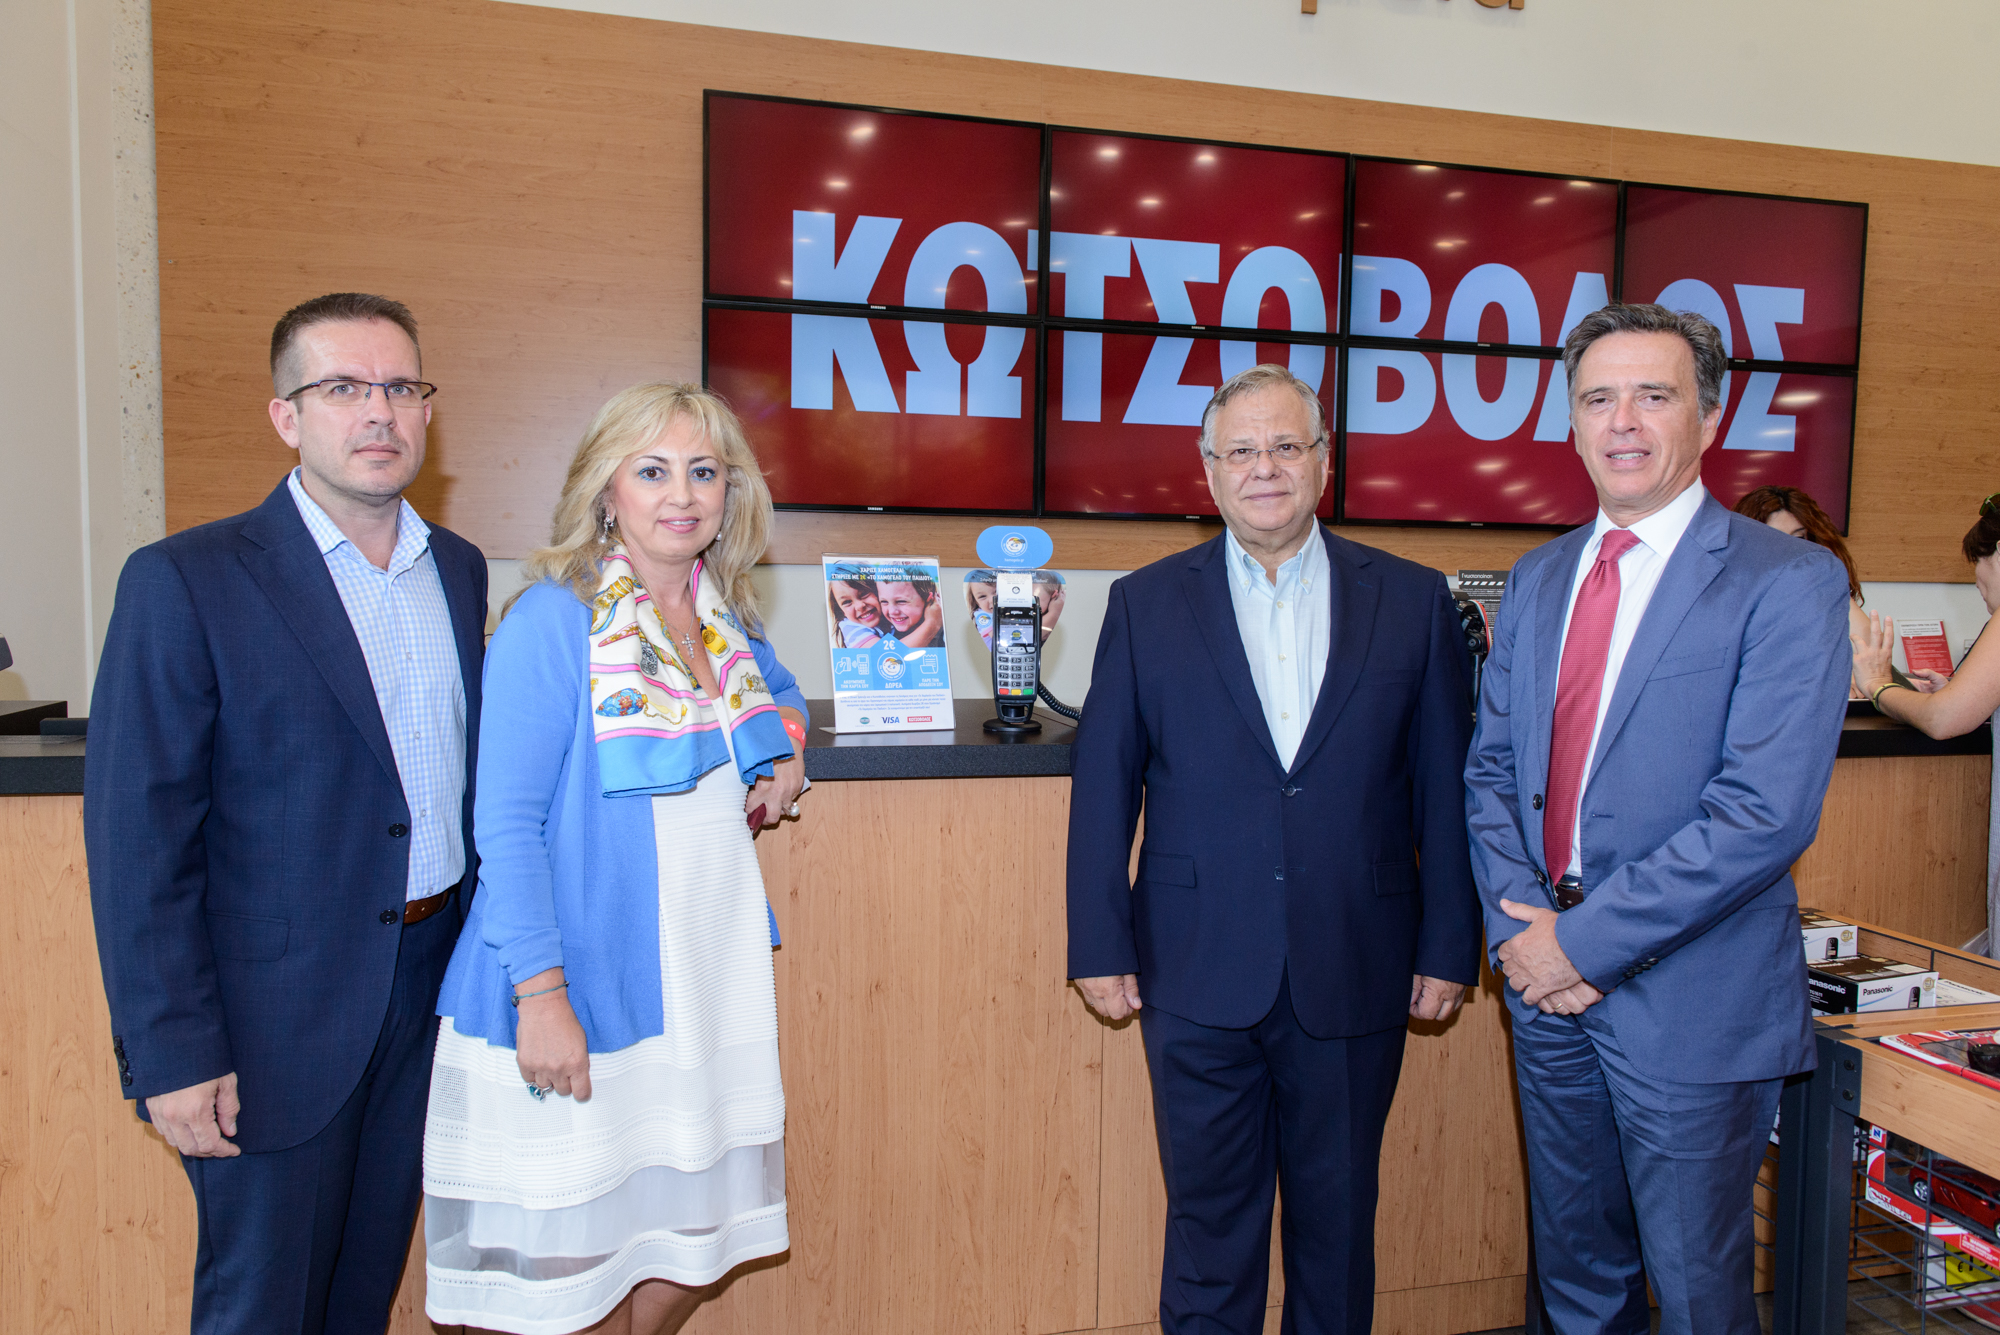 Η Visa μαζί με την Εθνική Τράπεζα και τον Κωτσόβολο στηρίζουν «Το Χαμόγελο του Παιδιού»